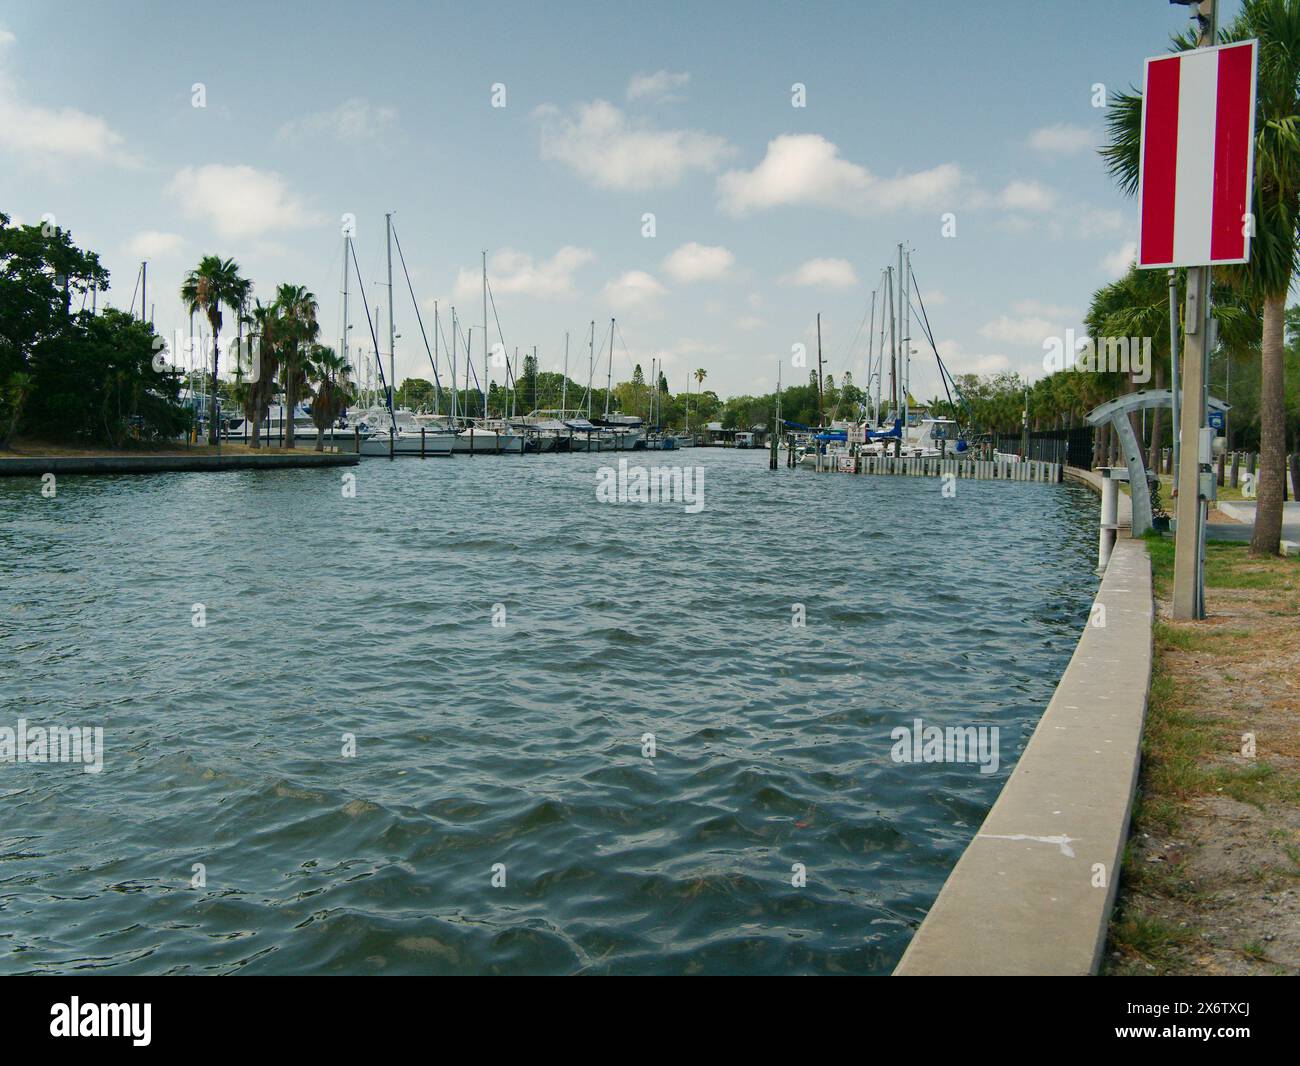 Ampia vista a nord del porticciolo municipale di Gulfport. Calmi acque blu con una piccola barca in arrivo. Onde ondulate. Attracchi per barche, pali di legno e barche Foto Stock